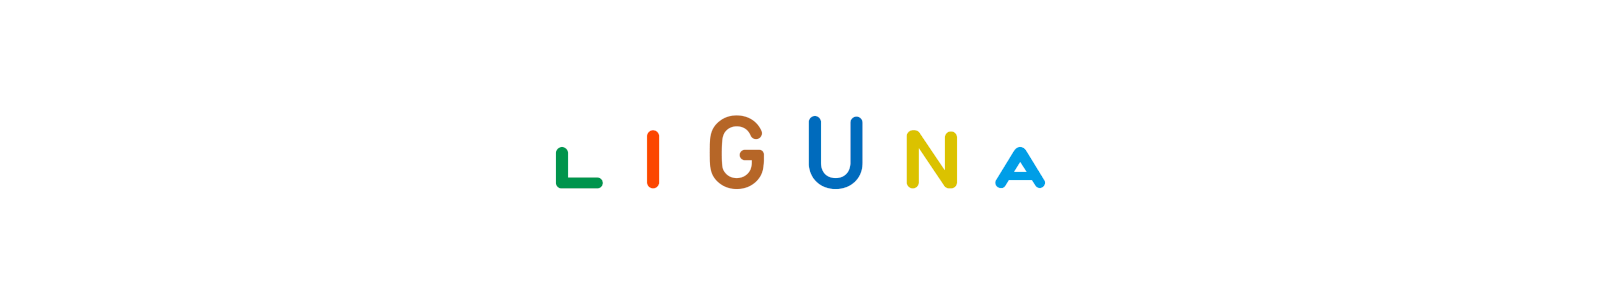 LIGUNA ロゴ